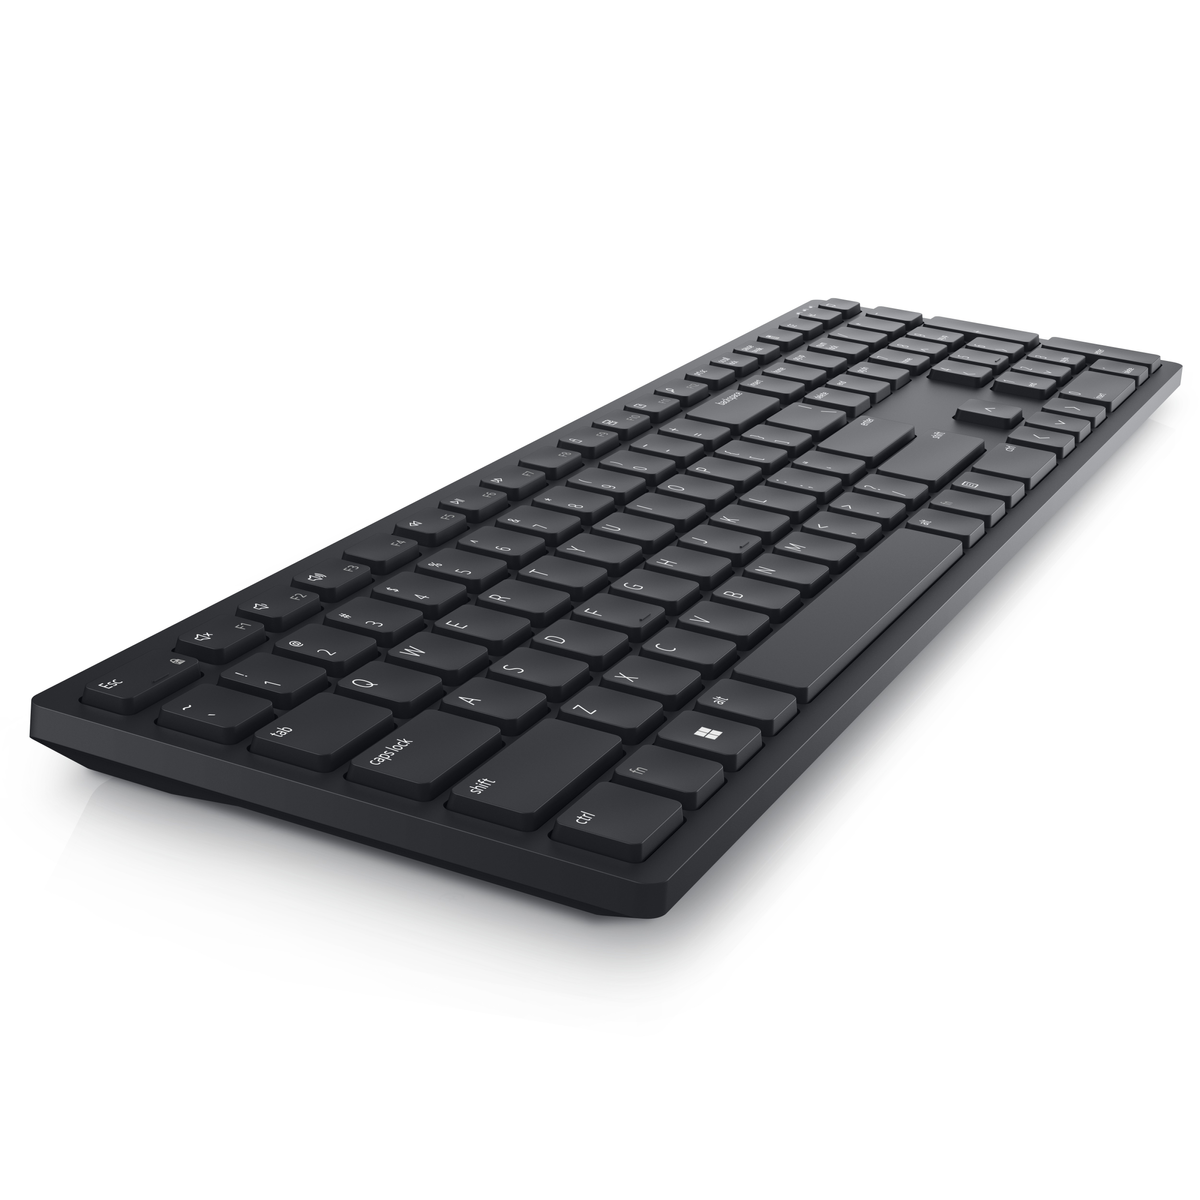 DELL KB500, Tastatur